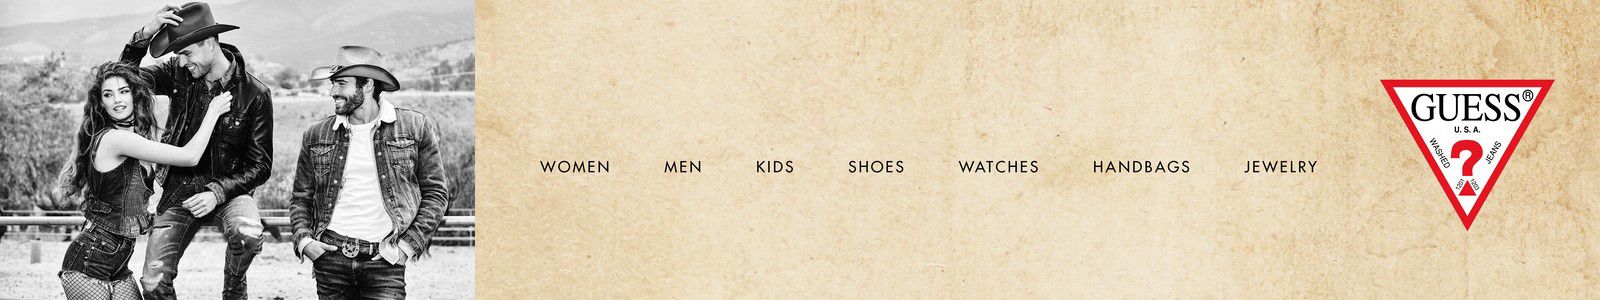 Guess, Women, Men, Kids, Shoes, Watches, Handbags, Jewelry